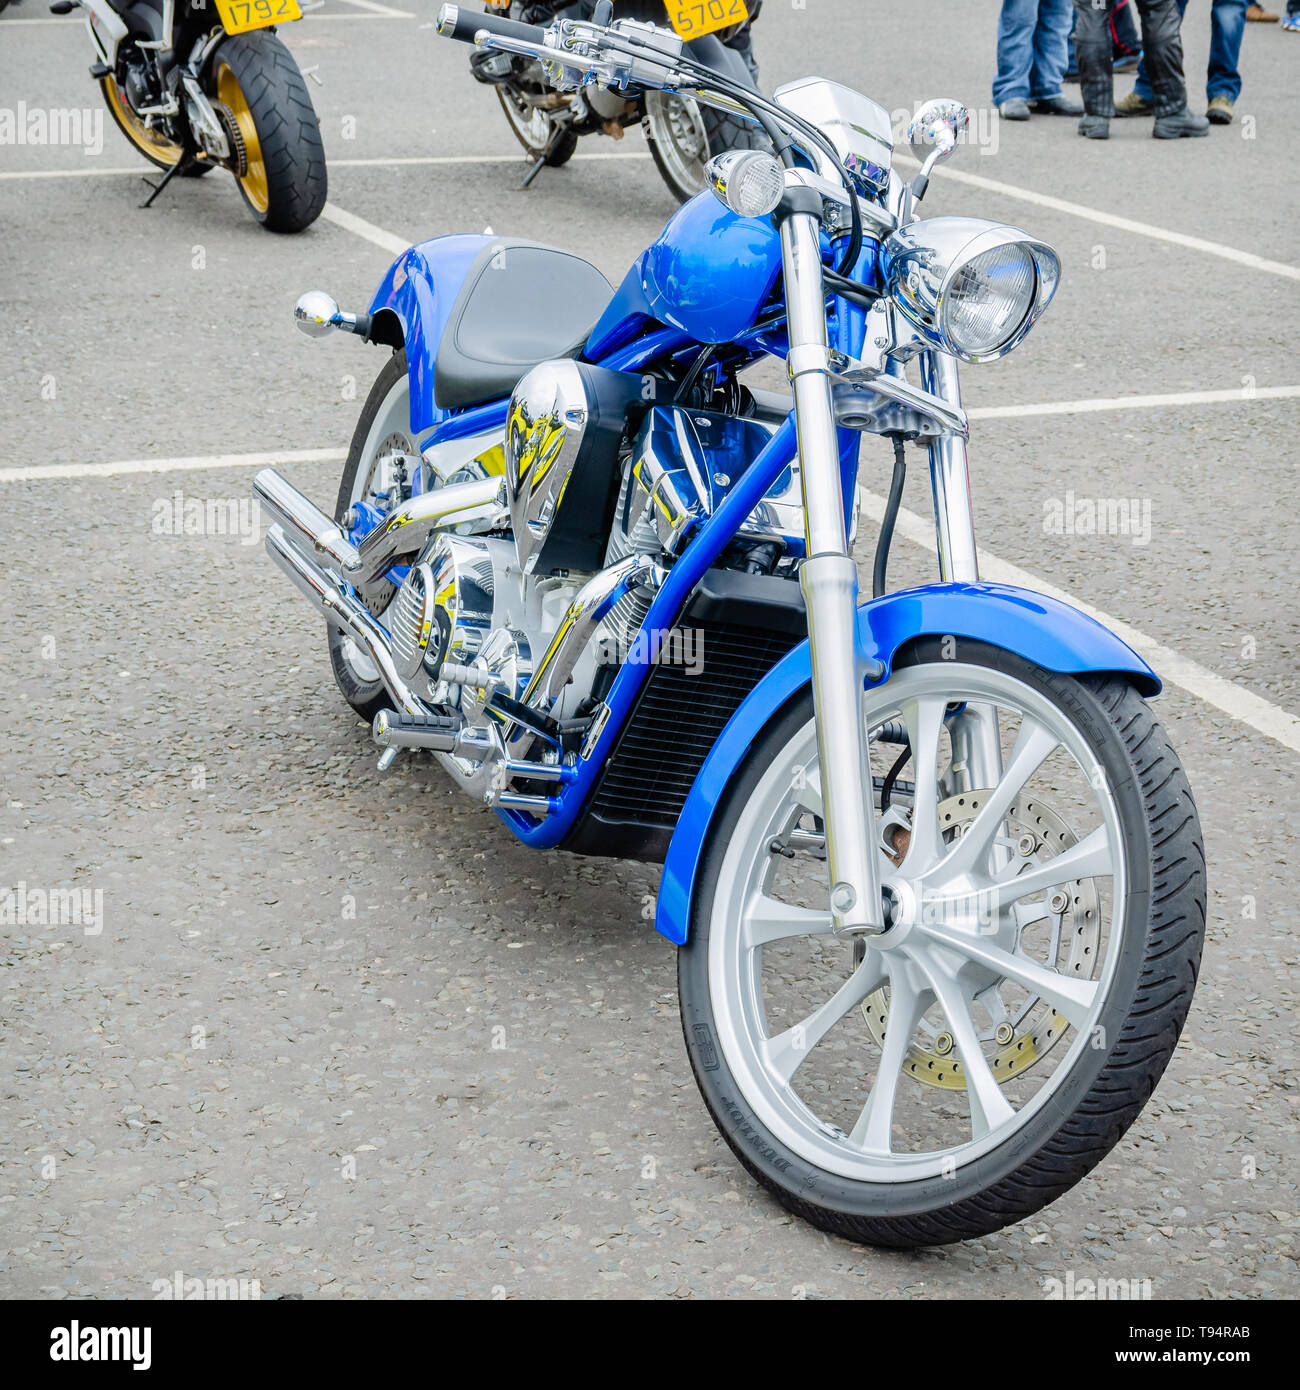 Une image éditoriale représentant une moto personnalisée avec châssis chromé bleu, pièces de moteur et les roues en alliage anodisé Banque D'Images